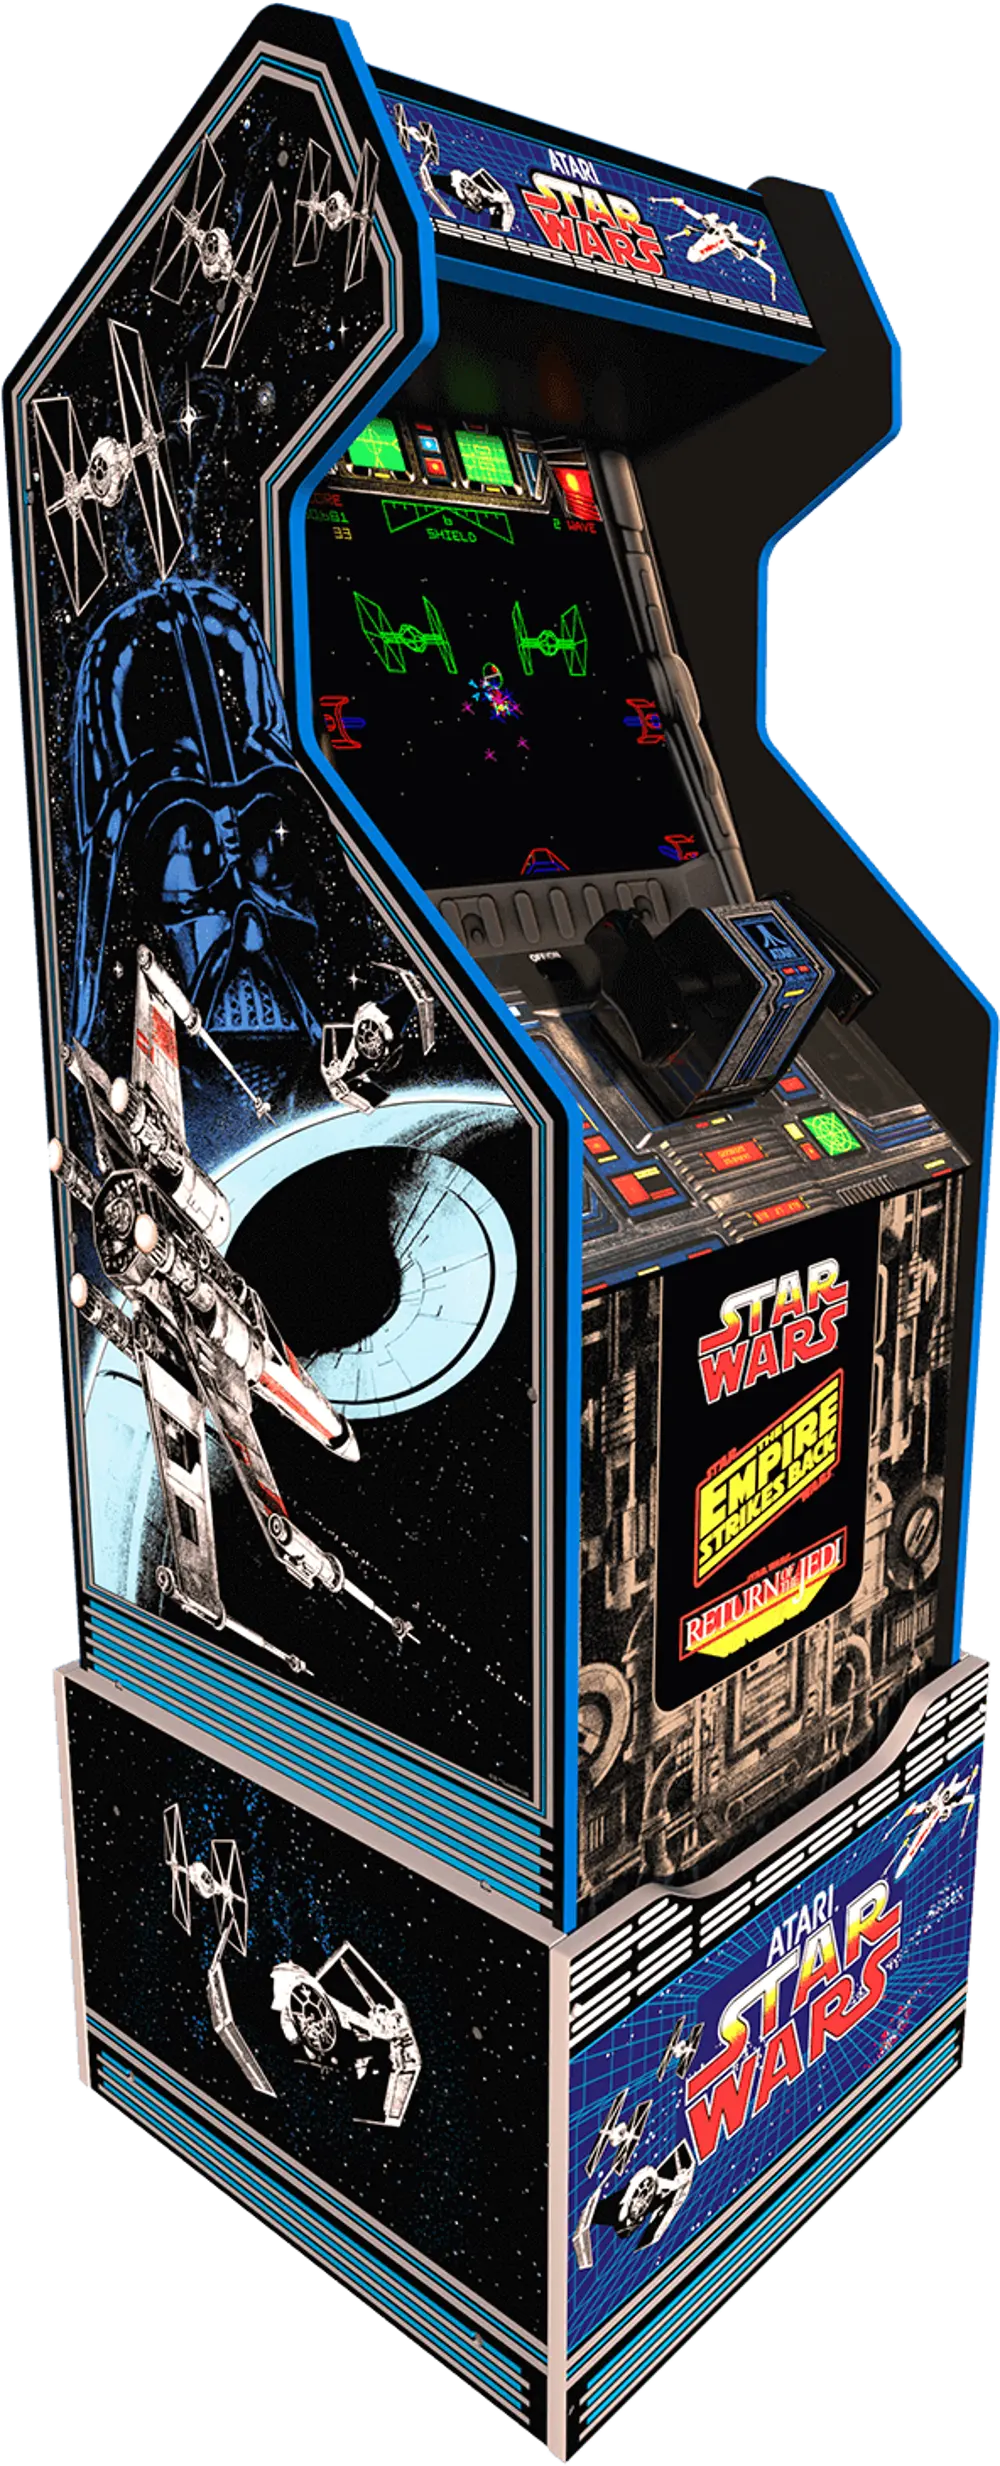 ARCADE1UP/STARWARS Star Wars Home Arcade Game-1